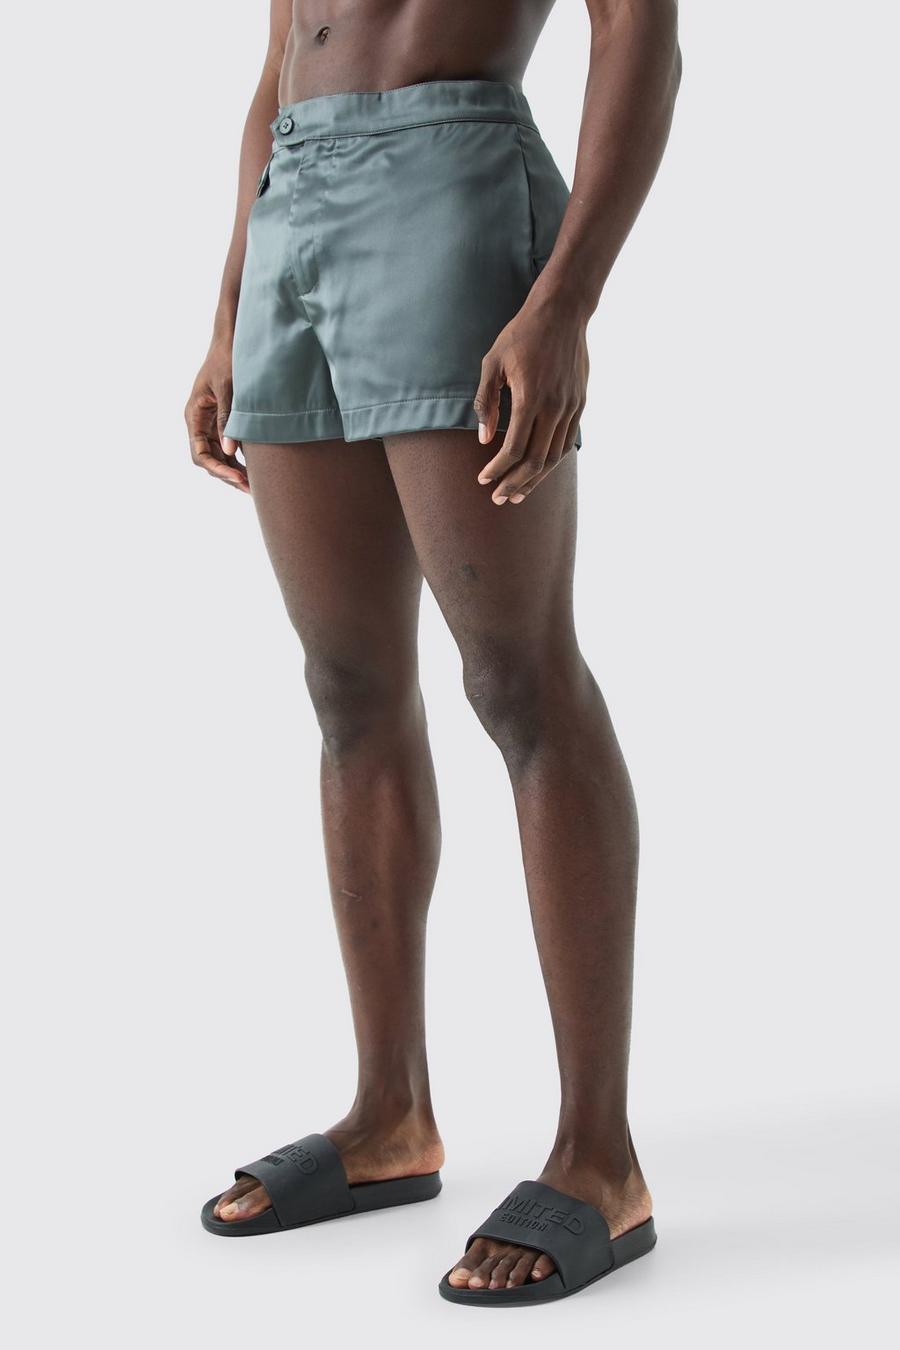 Pantaloncini da bagno Smart super corto con tasche in vita fissa, Green image number 1